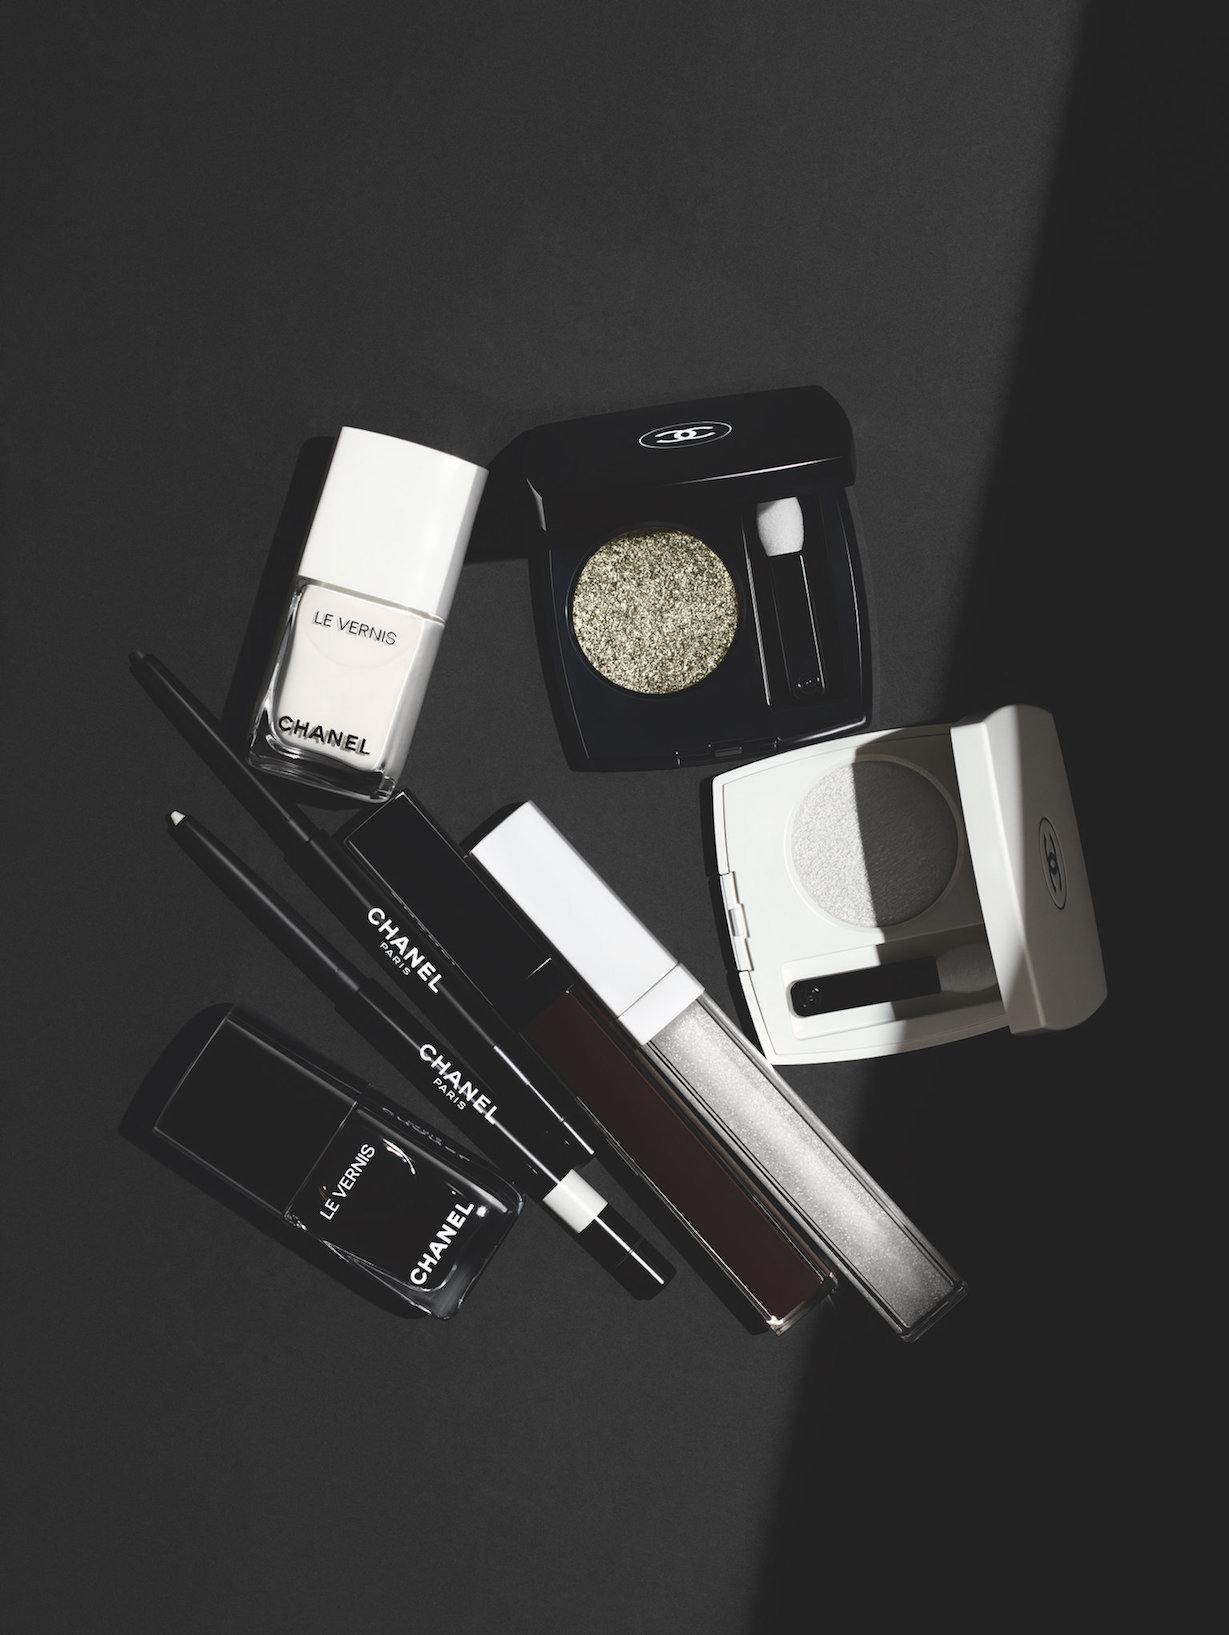 Noir et Blanc de Chanel F/W 2019 make-up collection : light meets